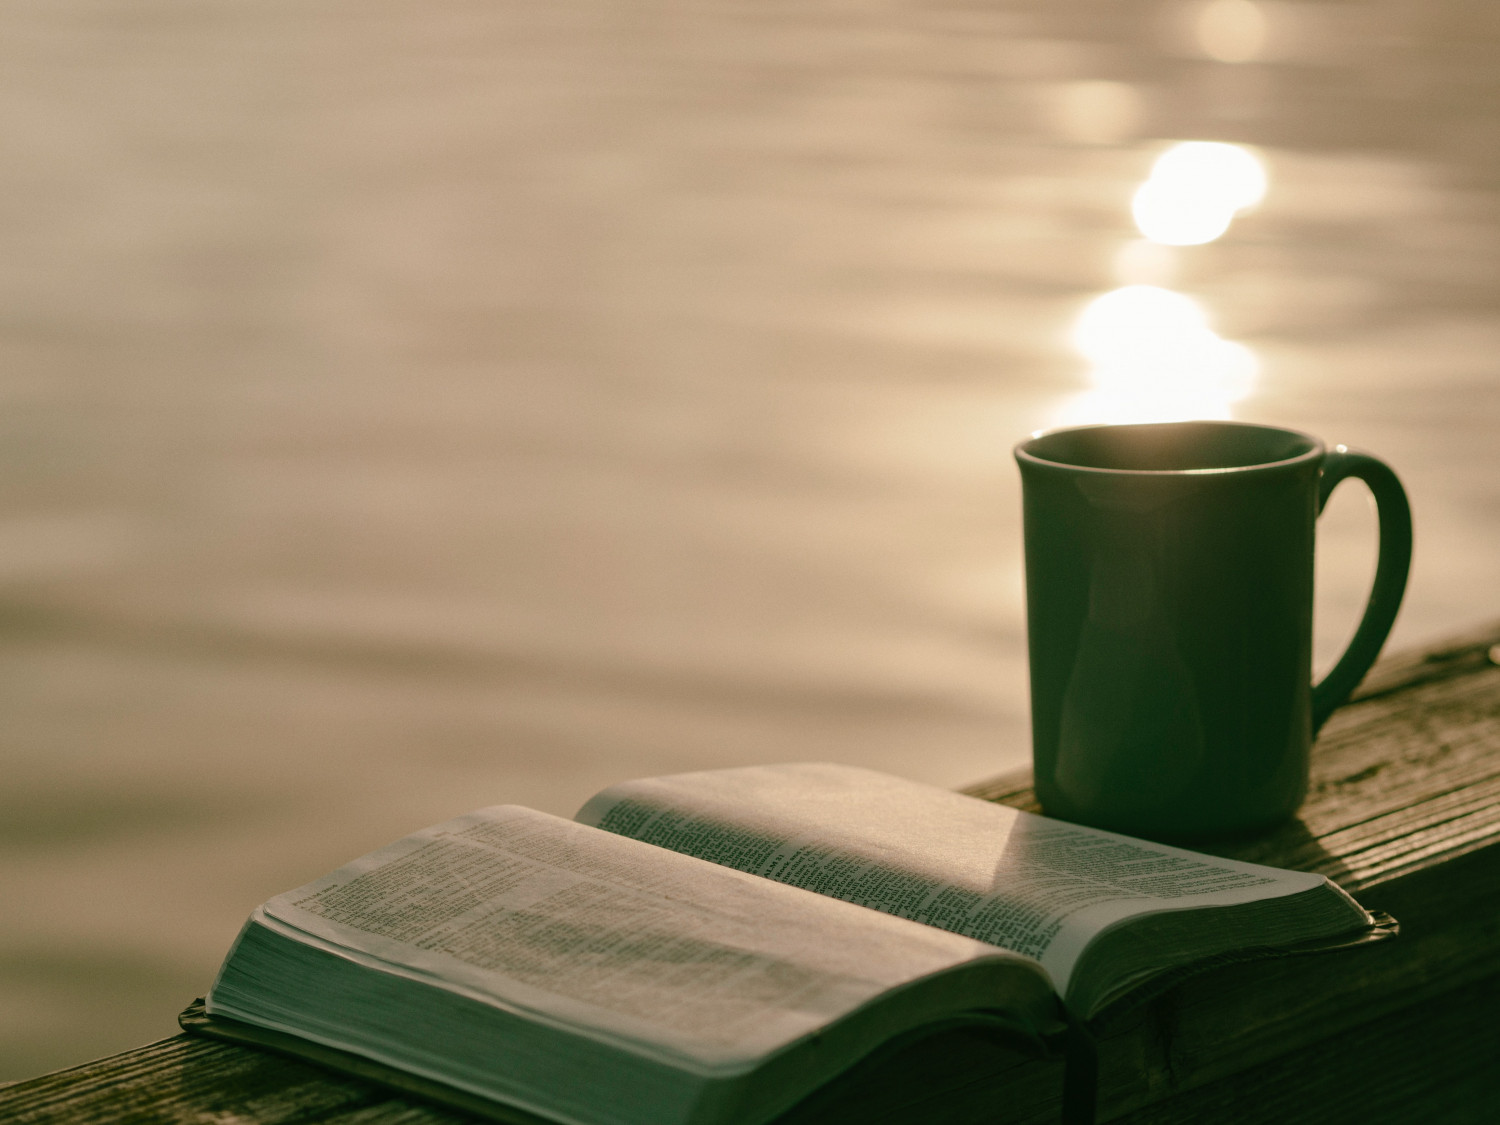 bible and mug by a lake